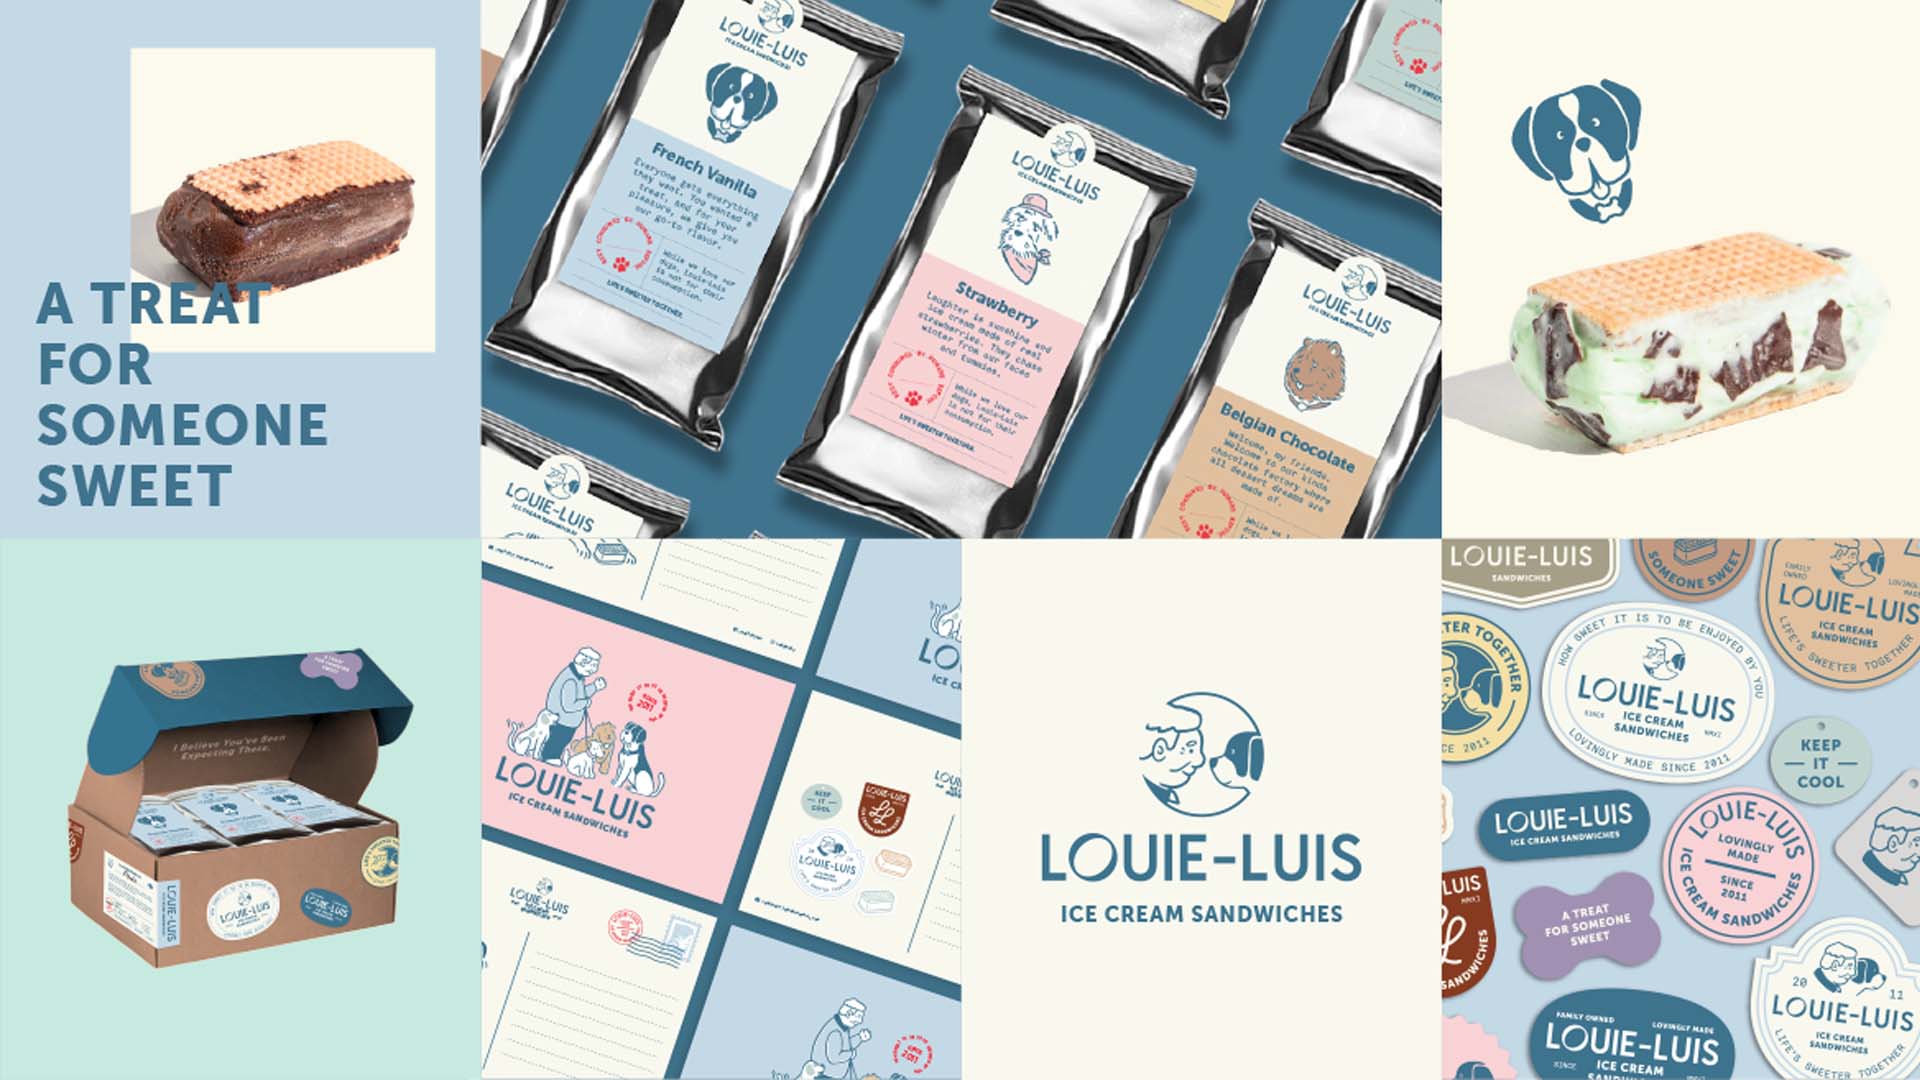 Louie-Luis